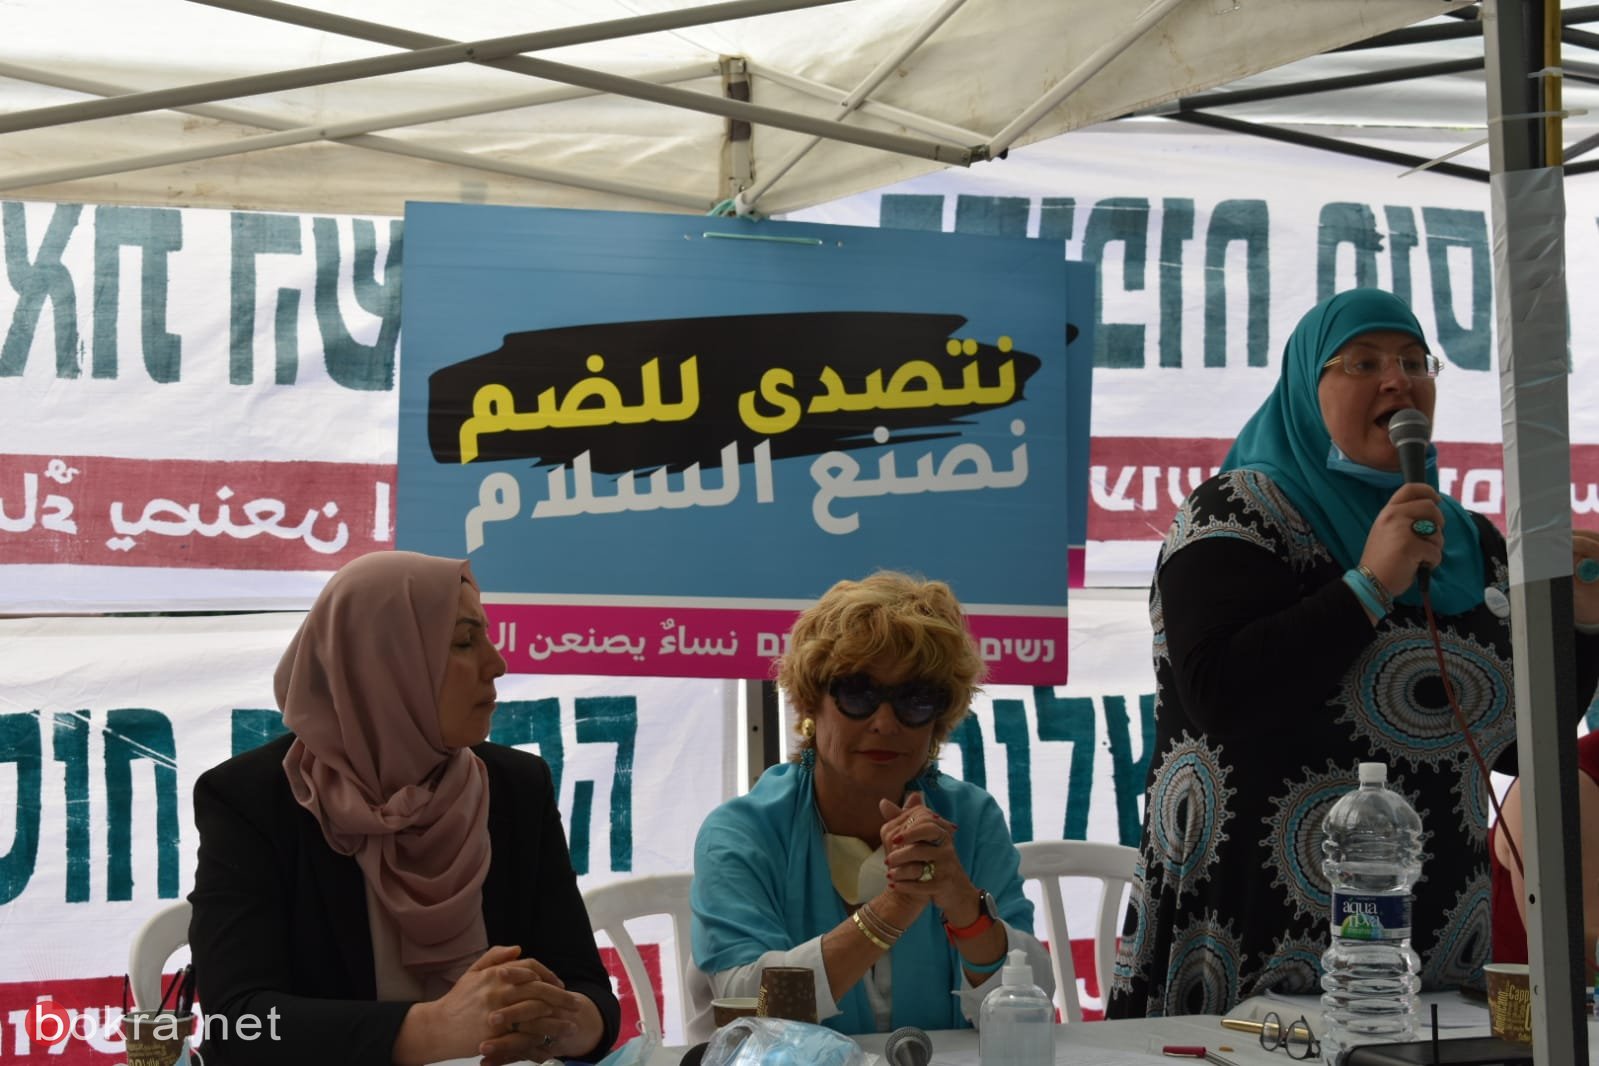 القدس: نساء يصنعن السلام  ضد مخطط الضم قبالة الكنيست -5